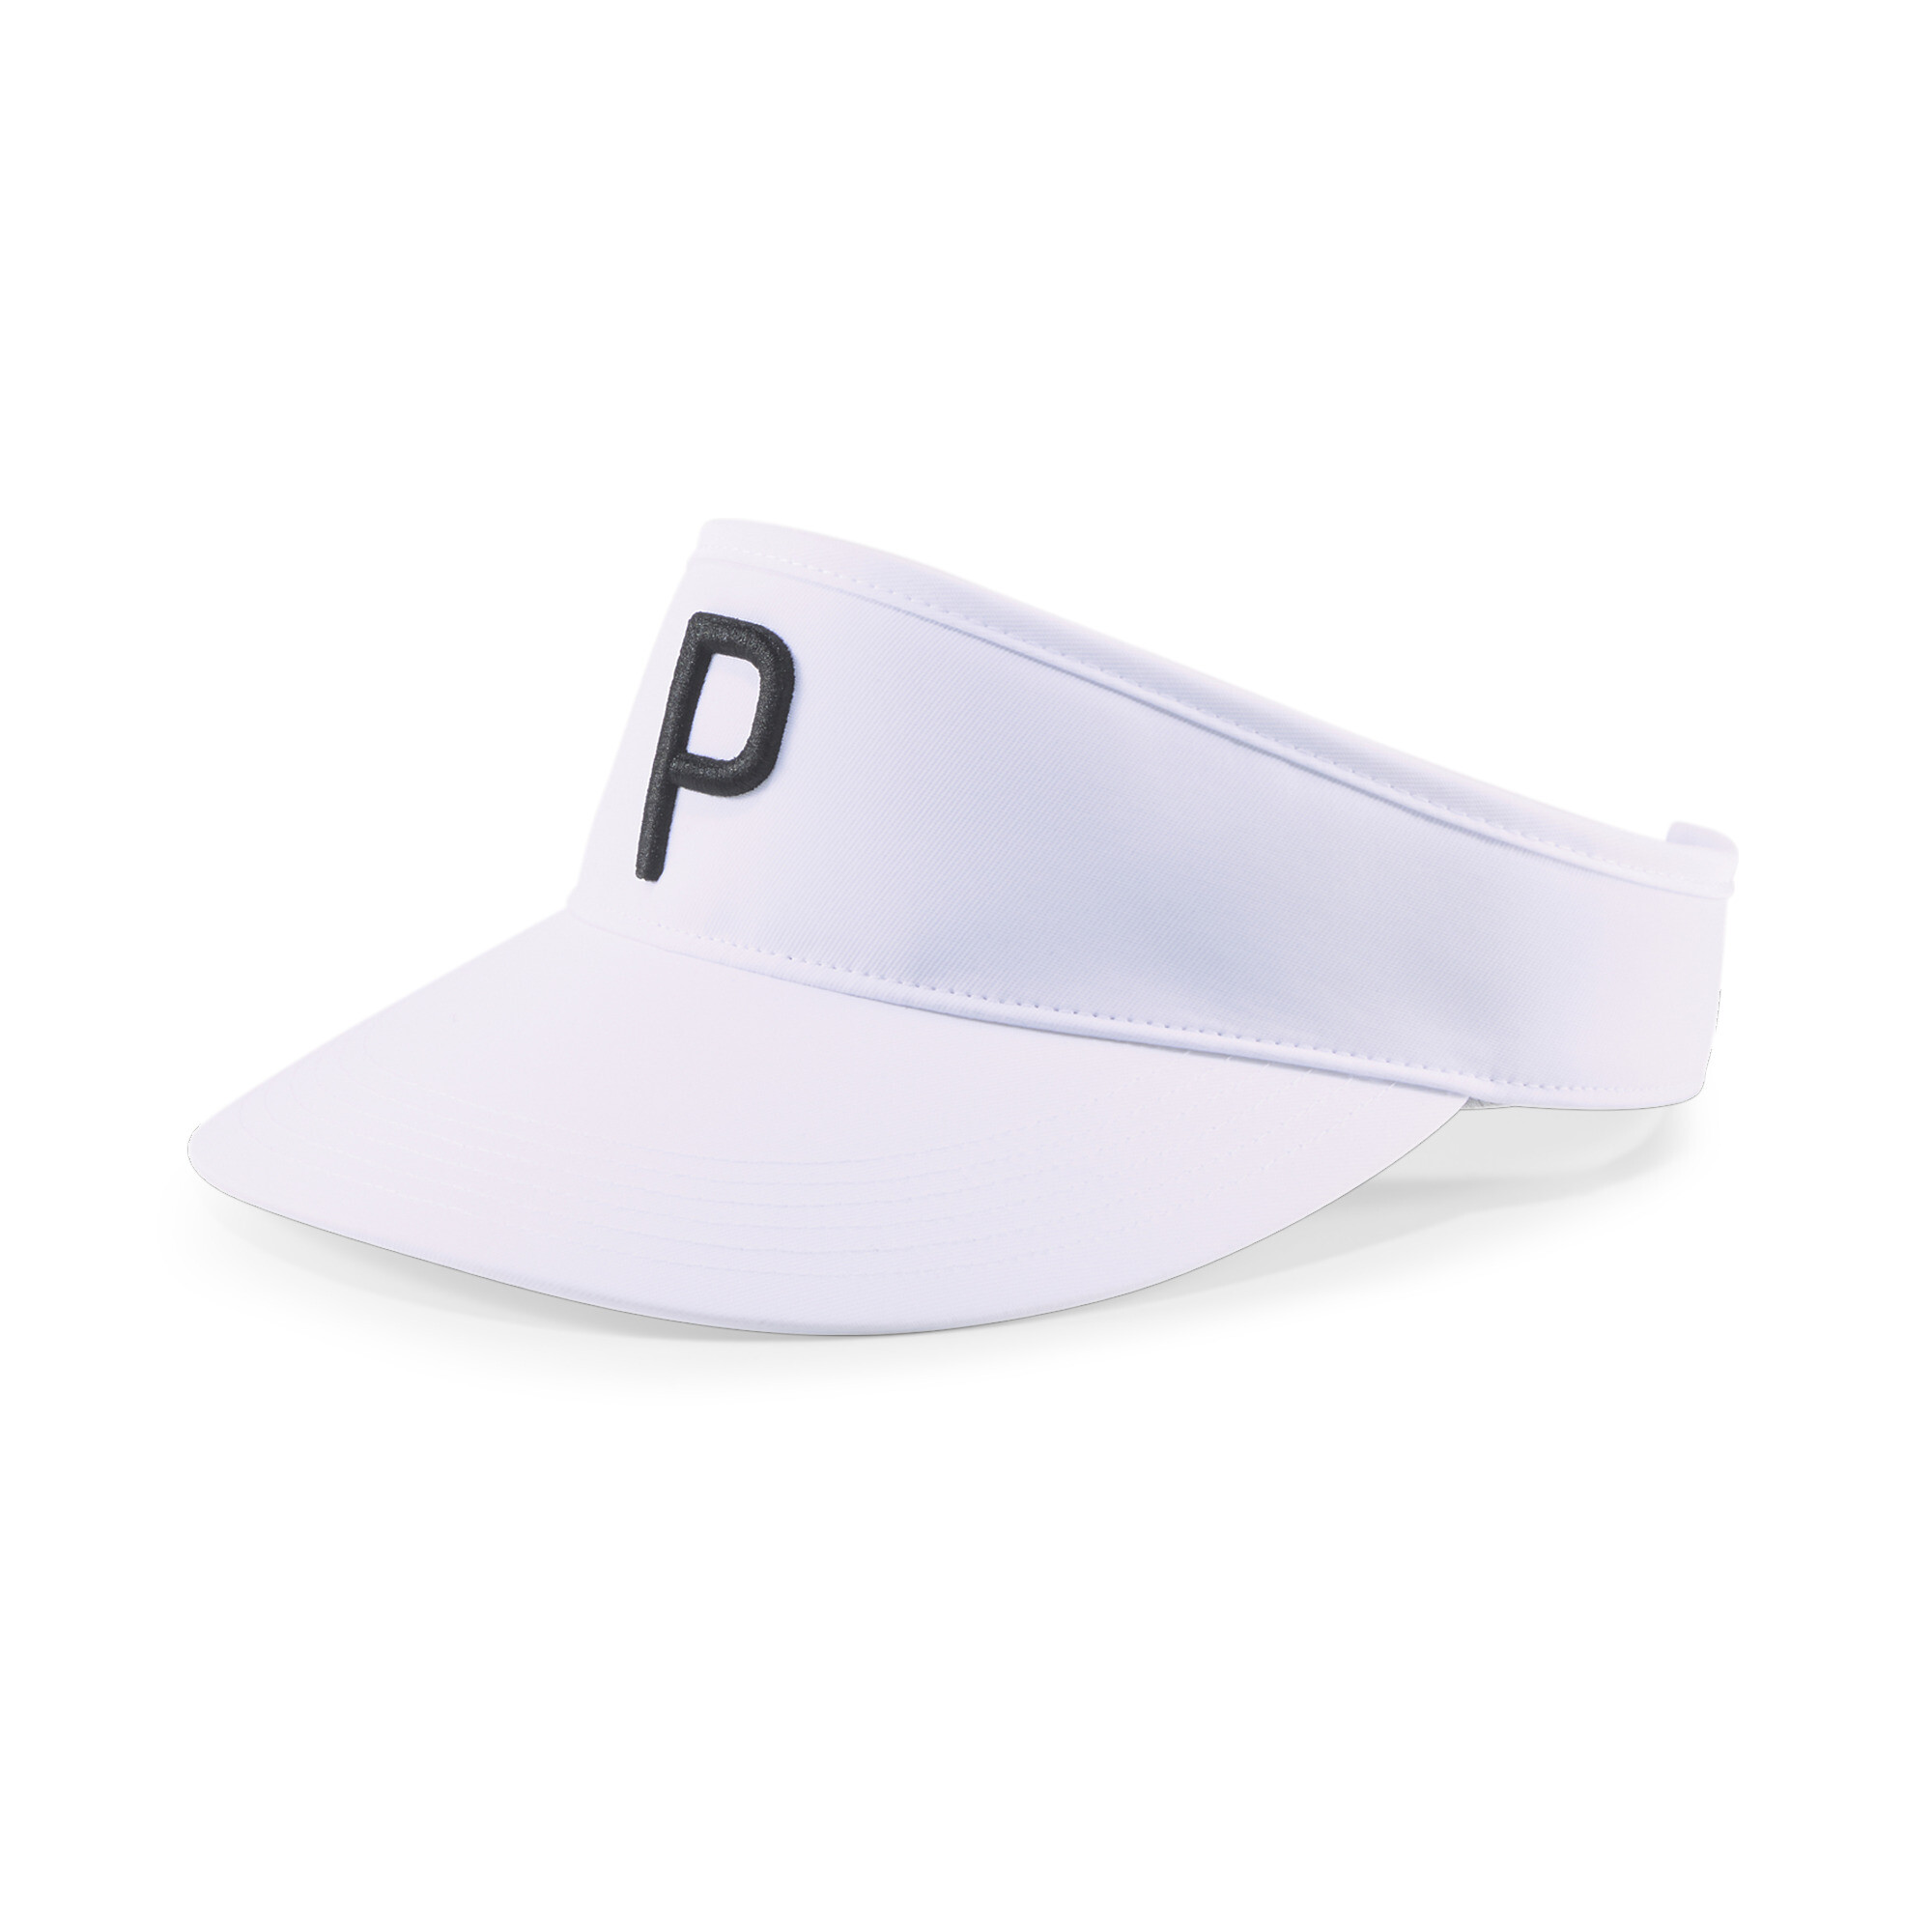 ＜プーマ公式通販＞ プーマ メンズ ゴルフ P アジャスタブル バイザー メンズ Bright White-Puma Black ｜PUMA.com画像